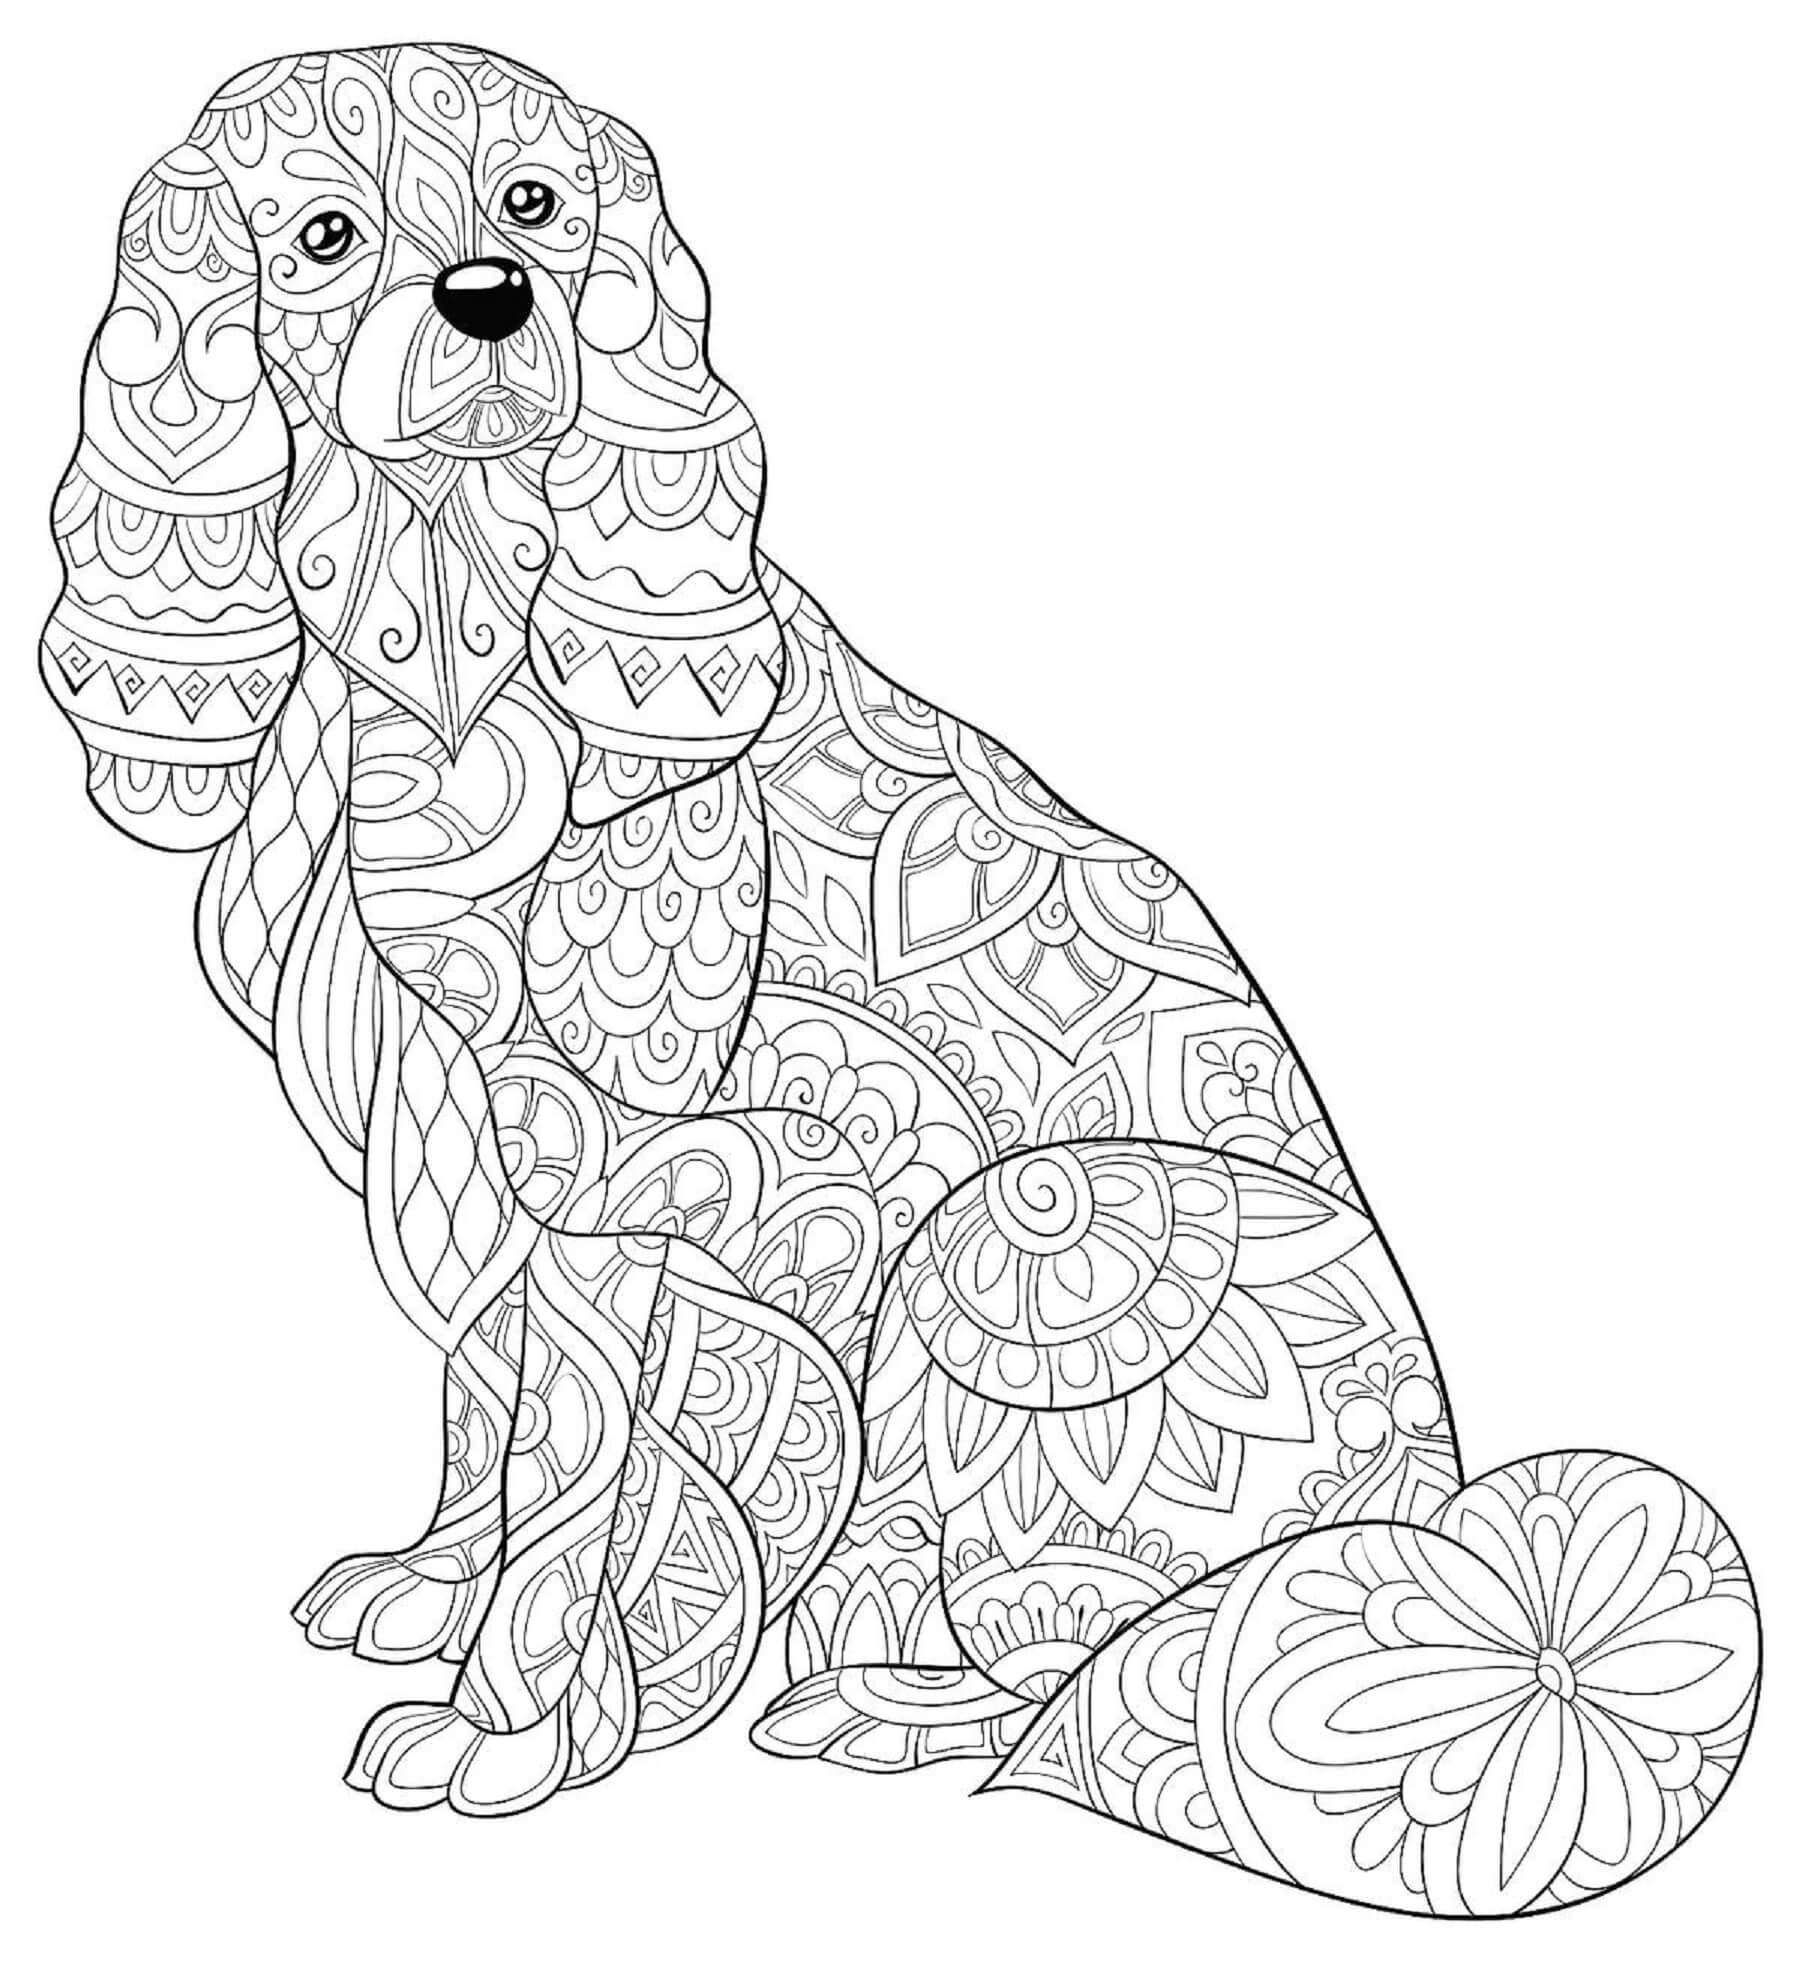 Mandala Dog Coloring Page - Sheet 3 Mandalas